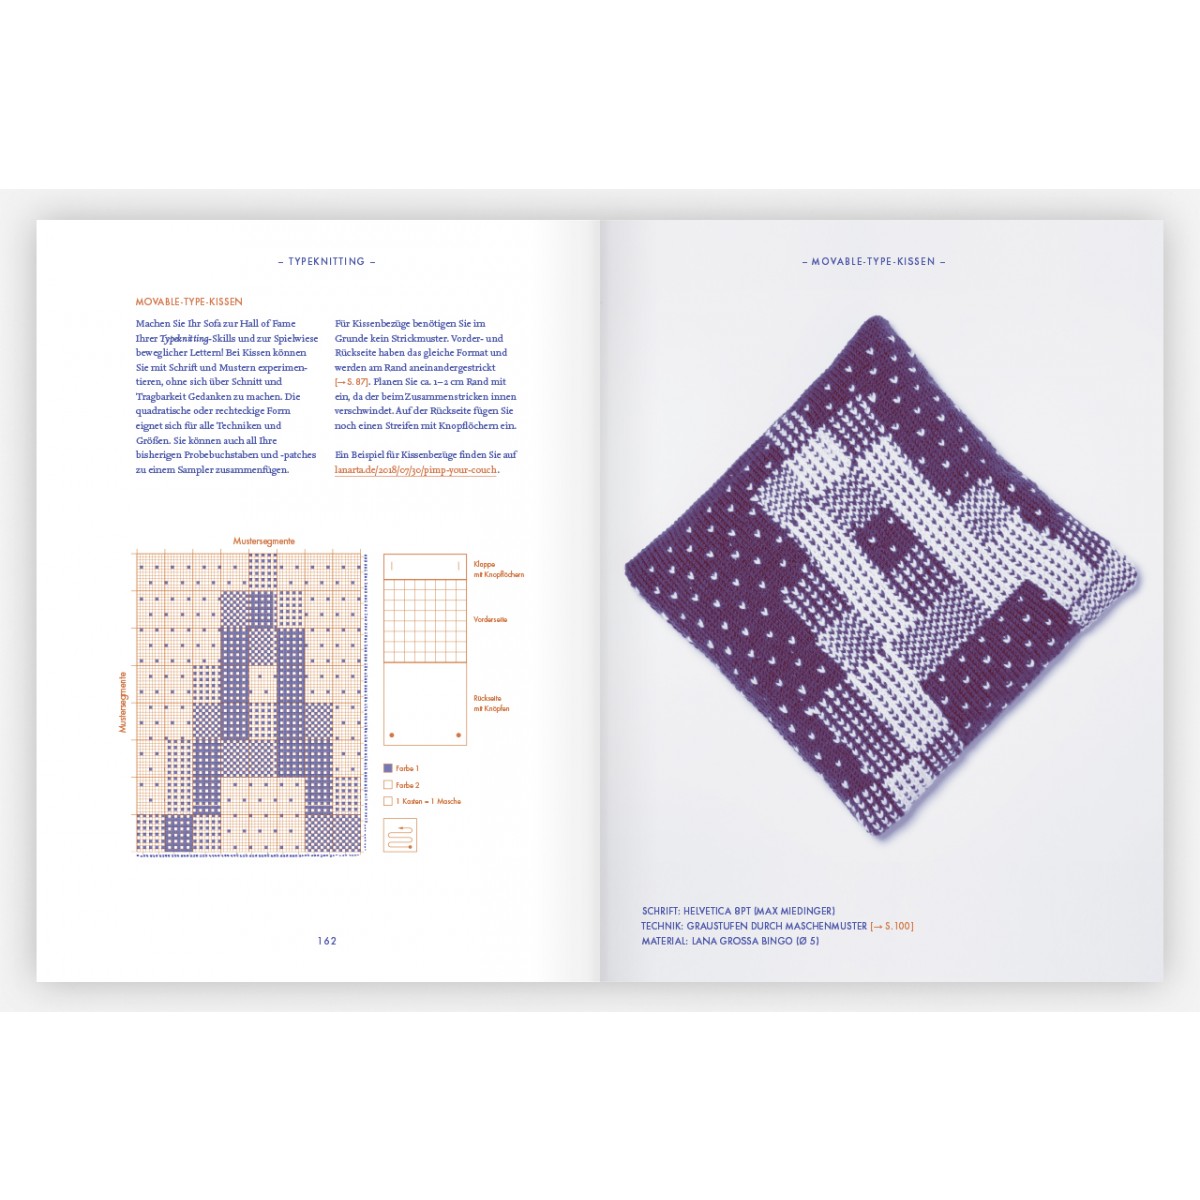 Rüdiger Schlömer	
Pixel, Patch und Pattern
Typeknitting